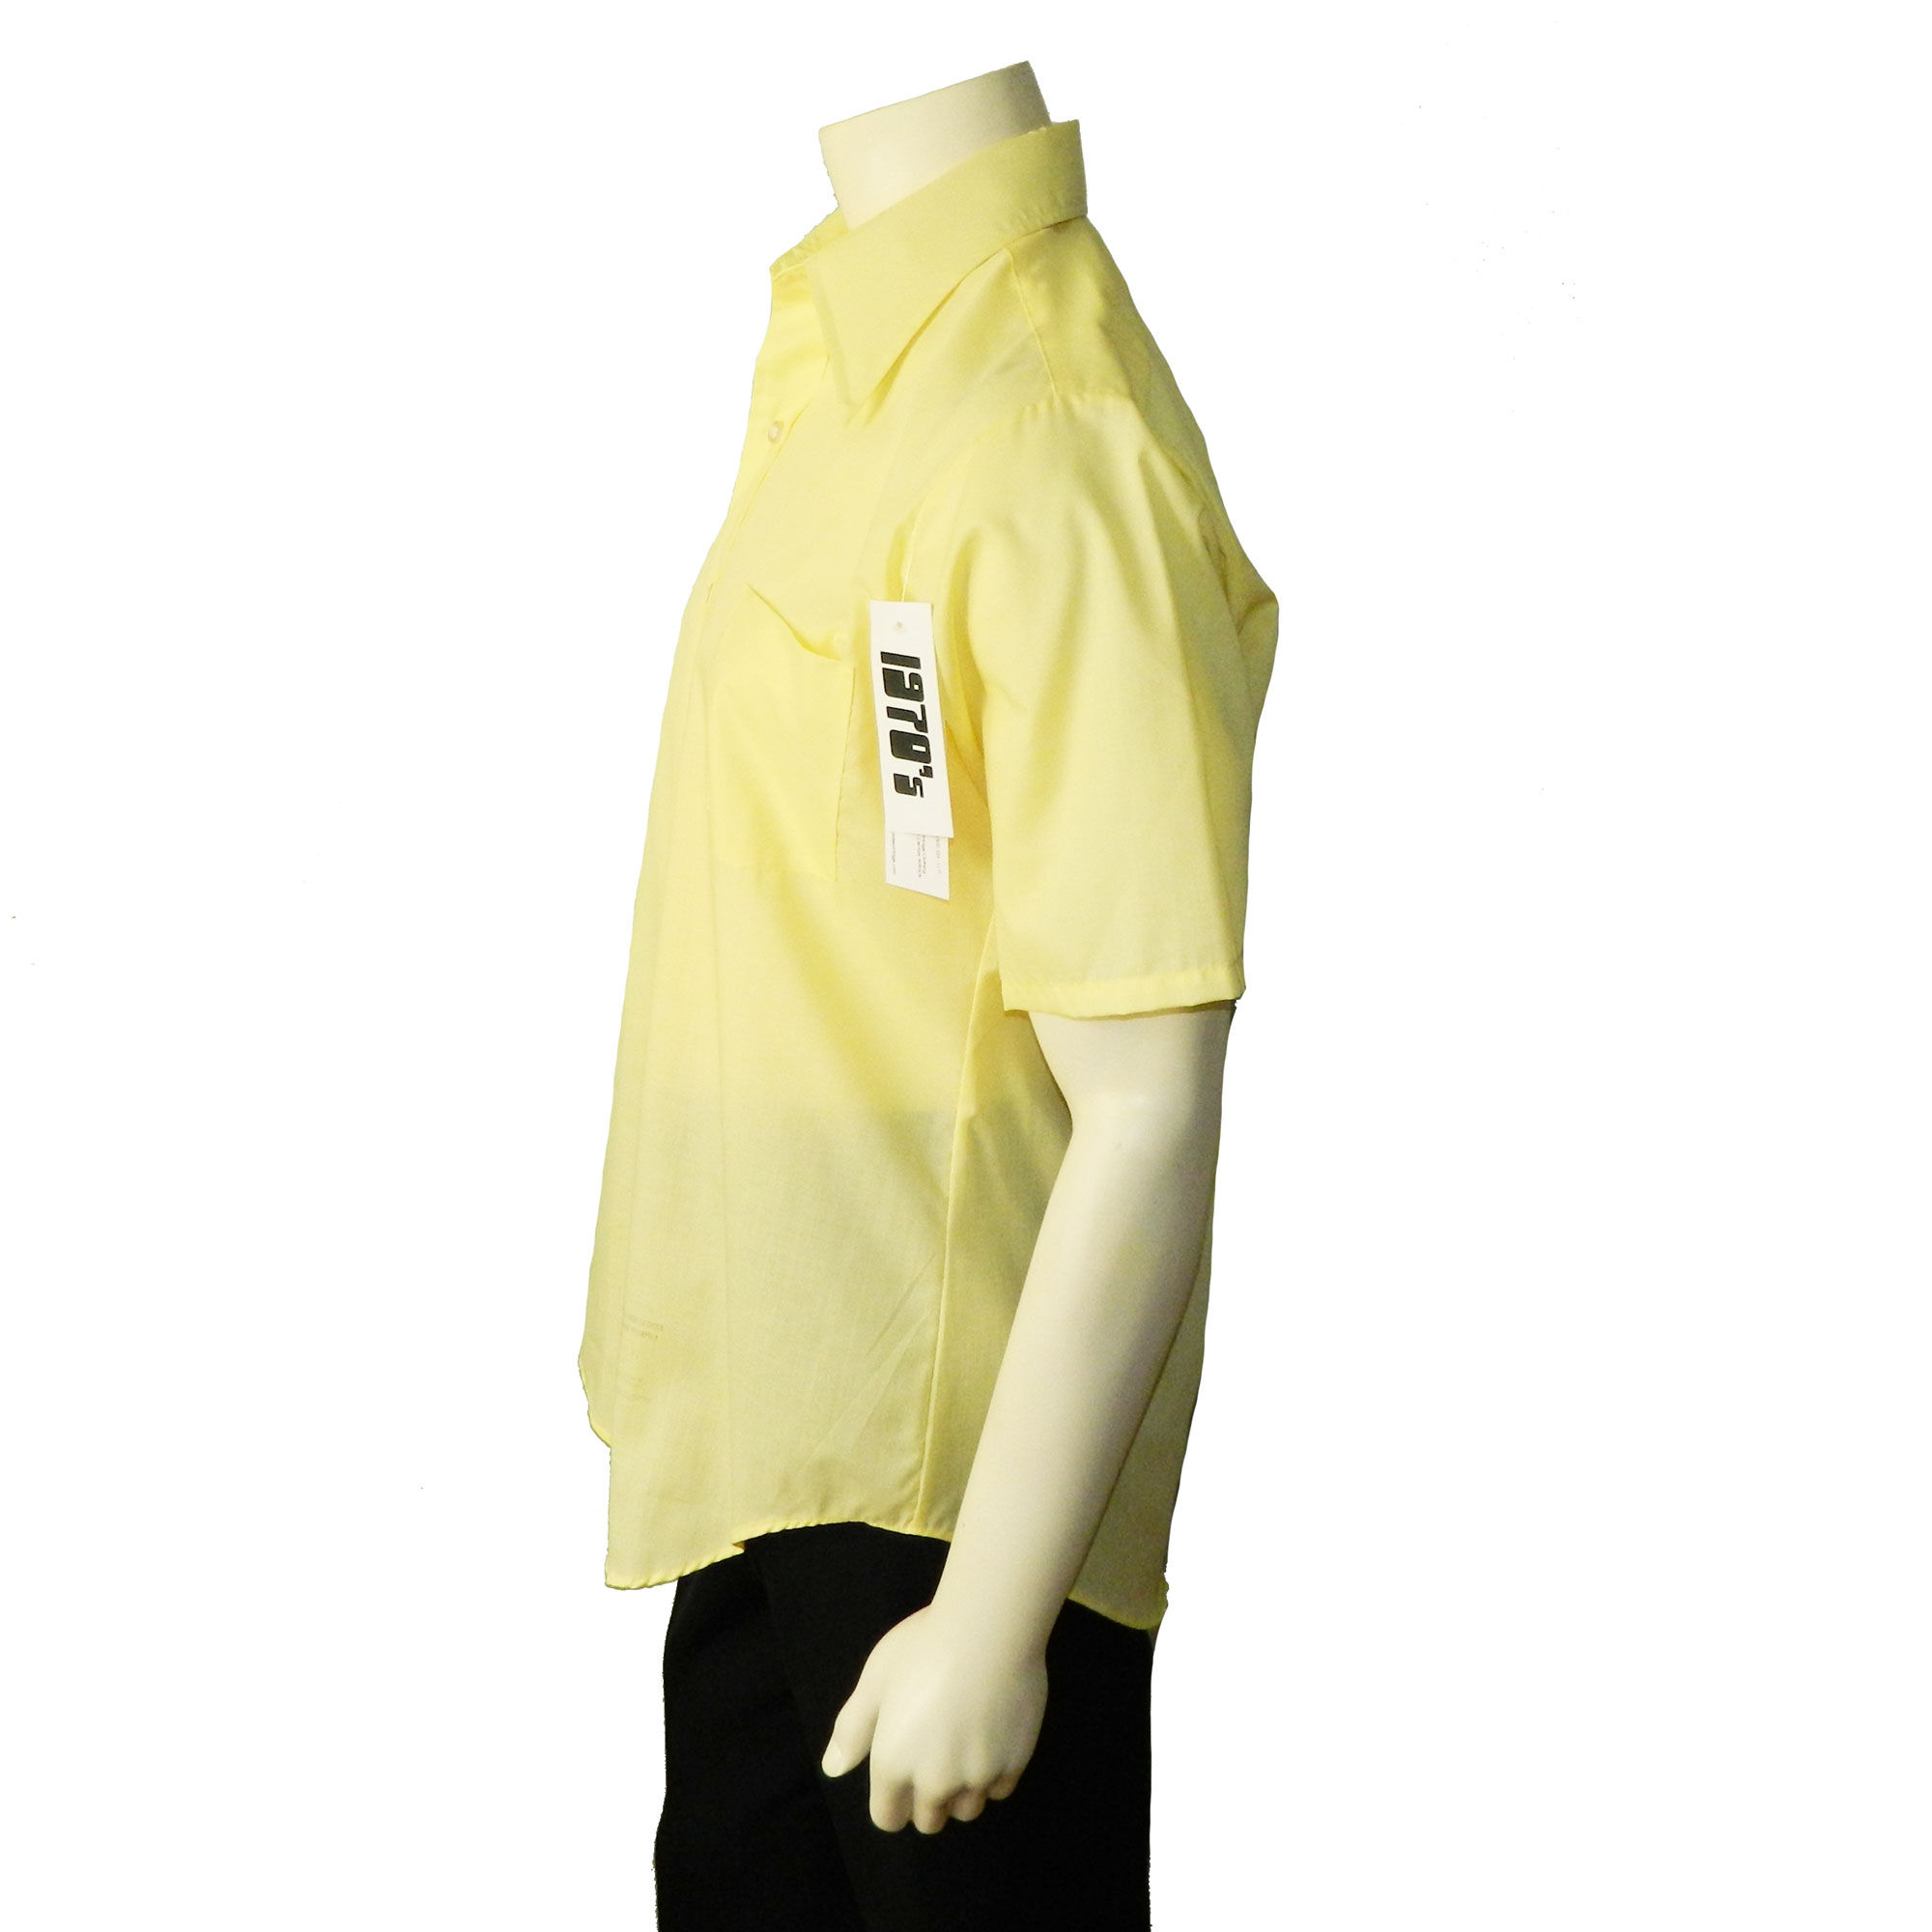 1970s short sleeve yellow dress shirt